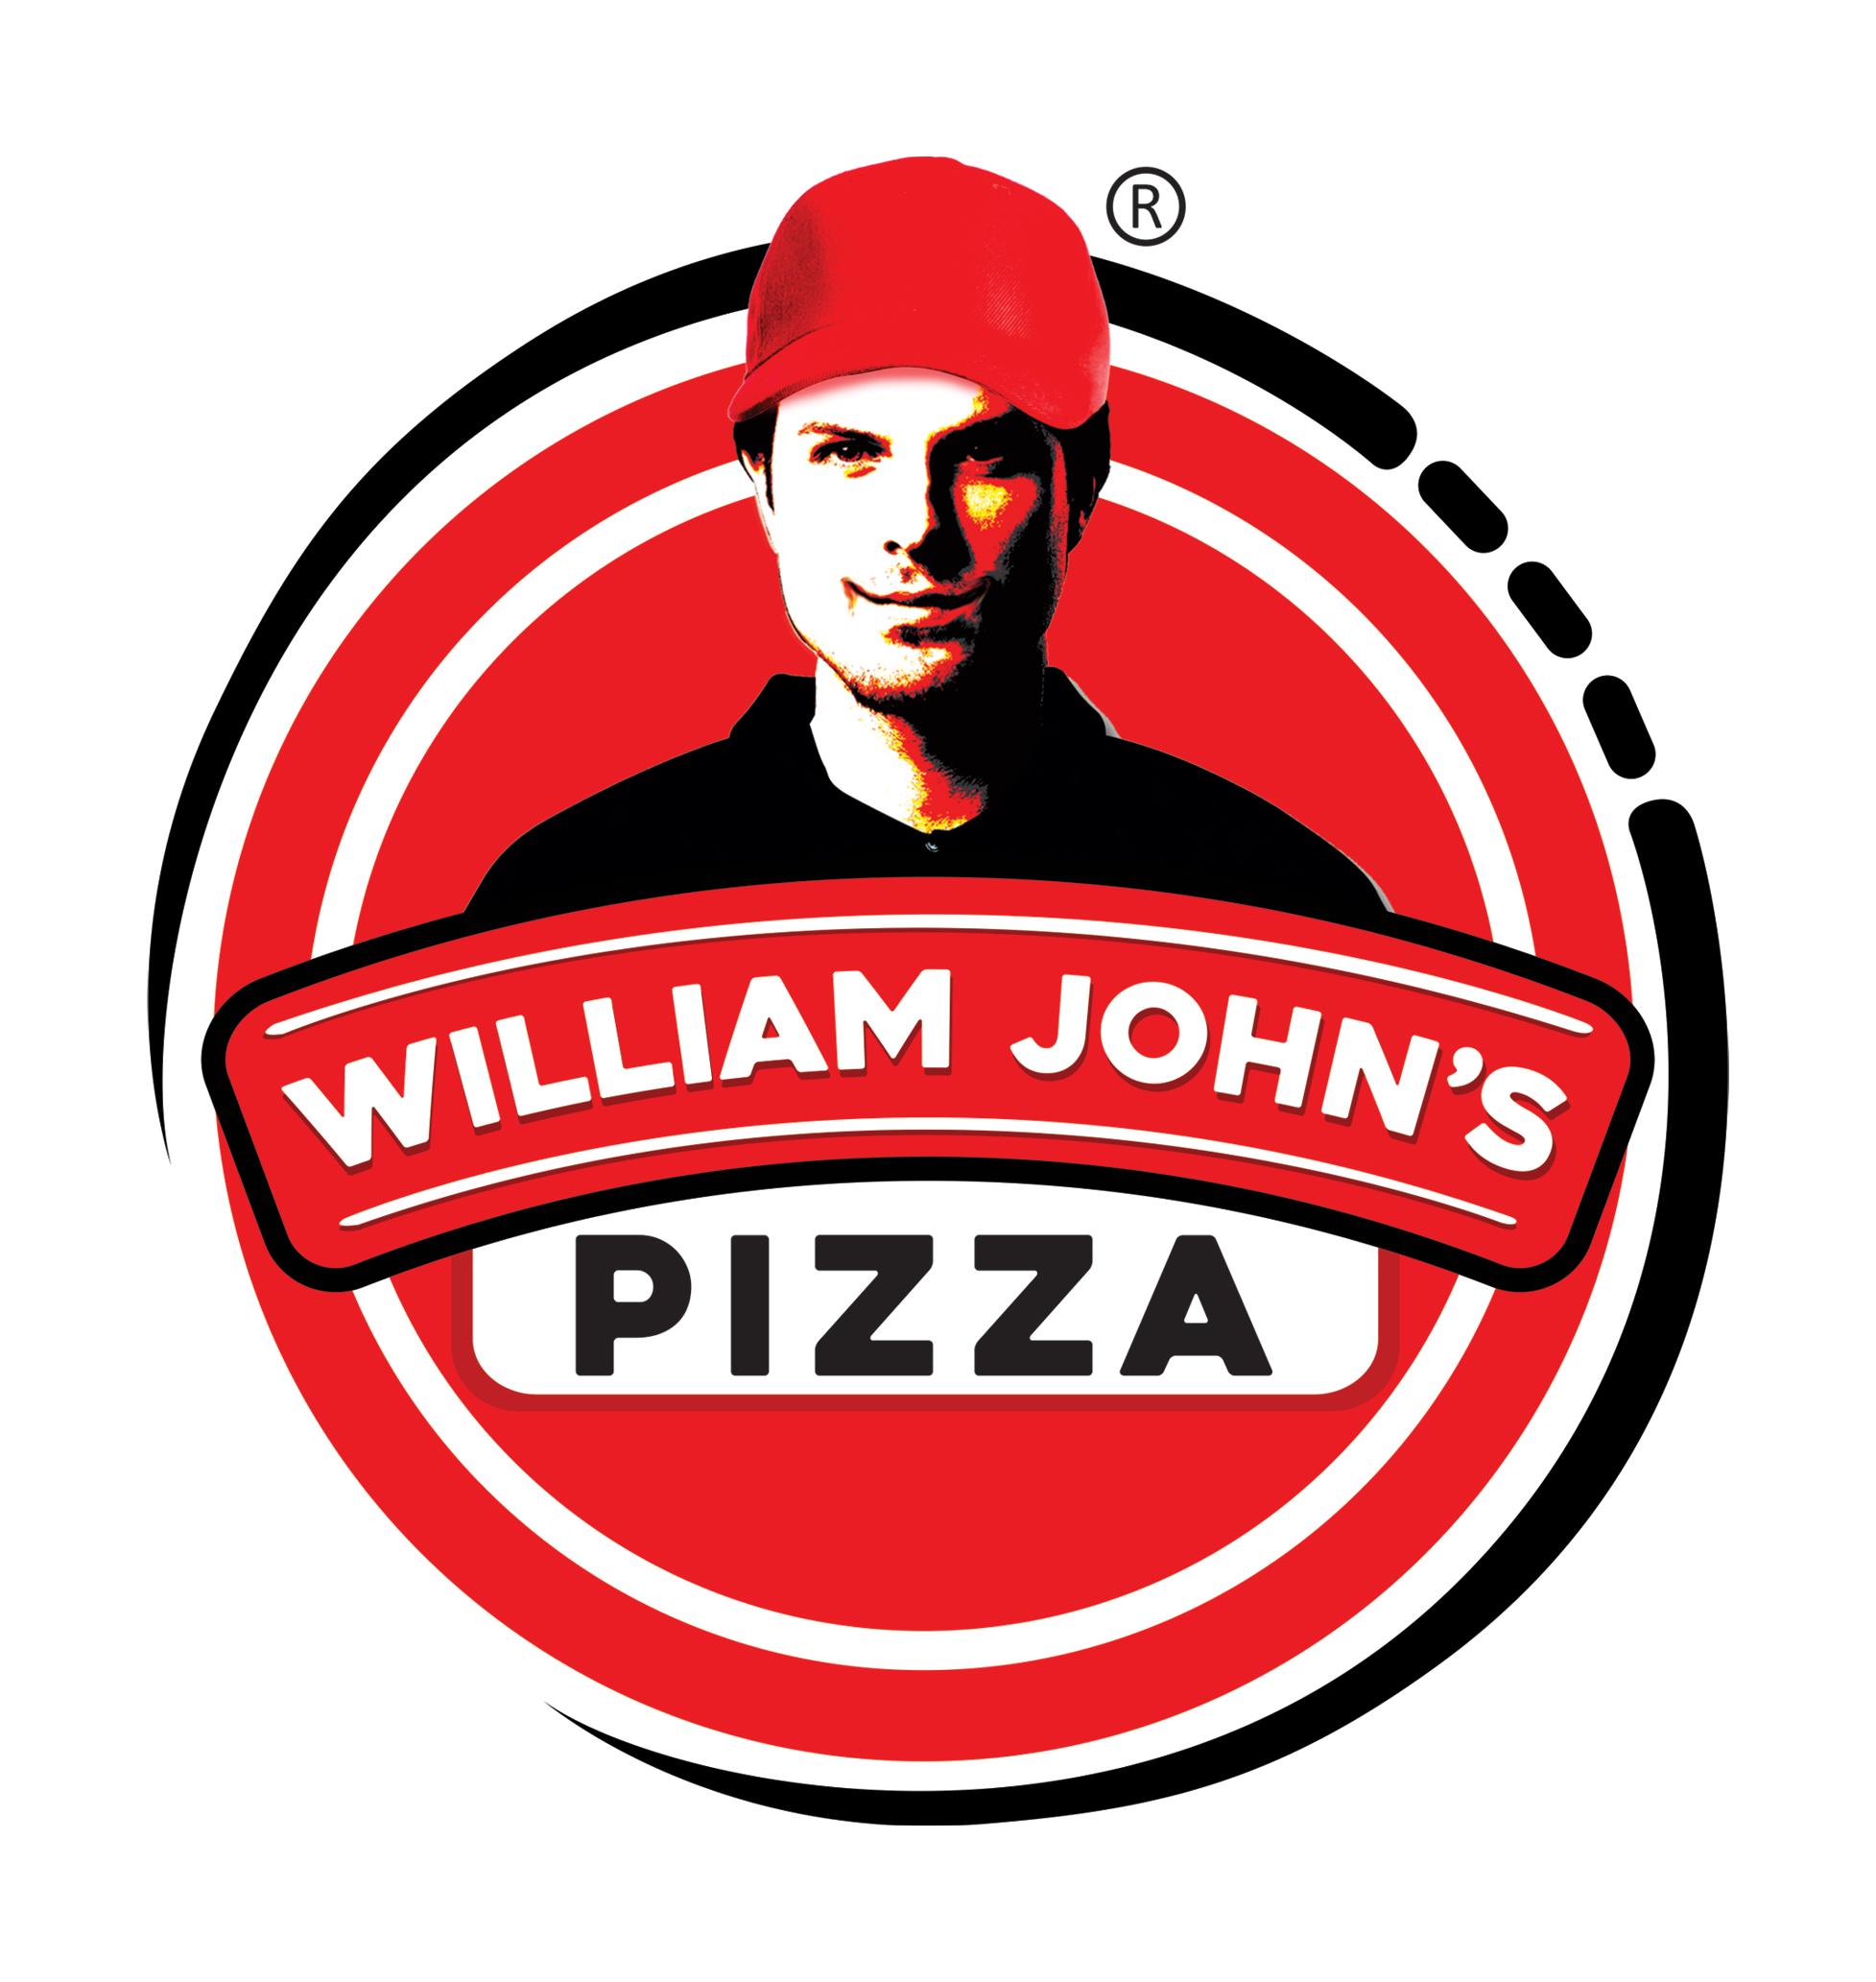 William john's pizza - Gotri